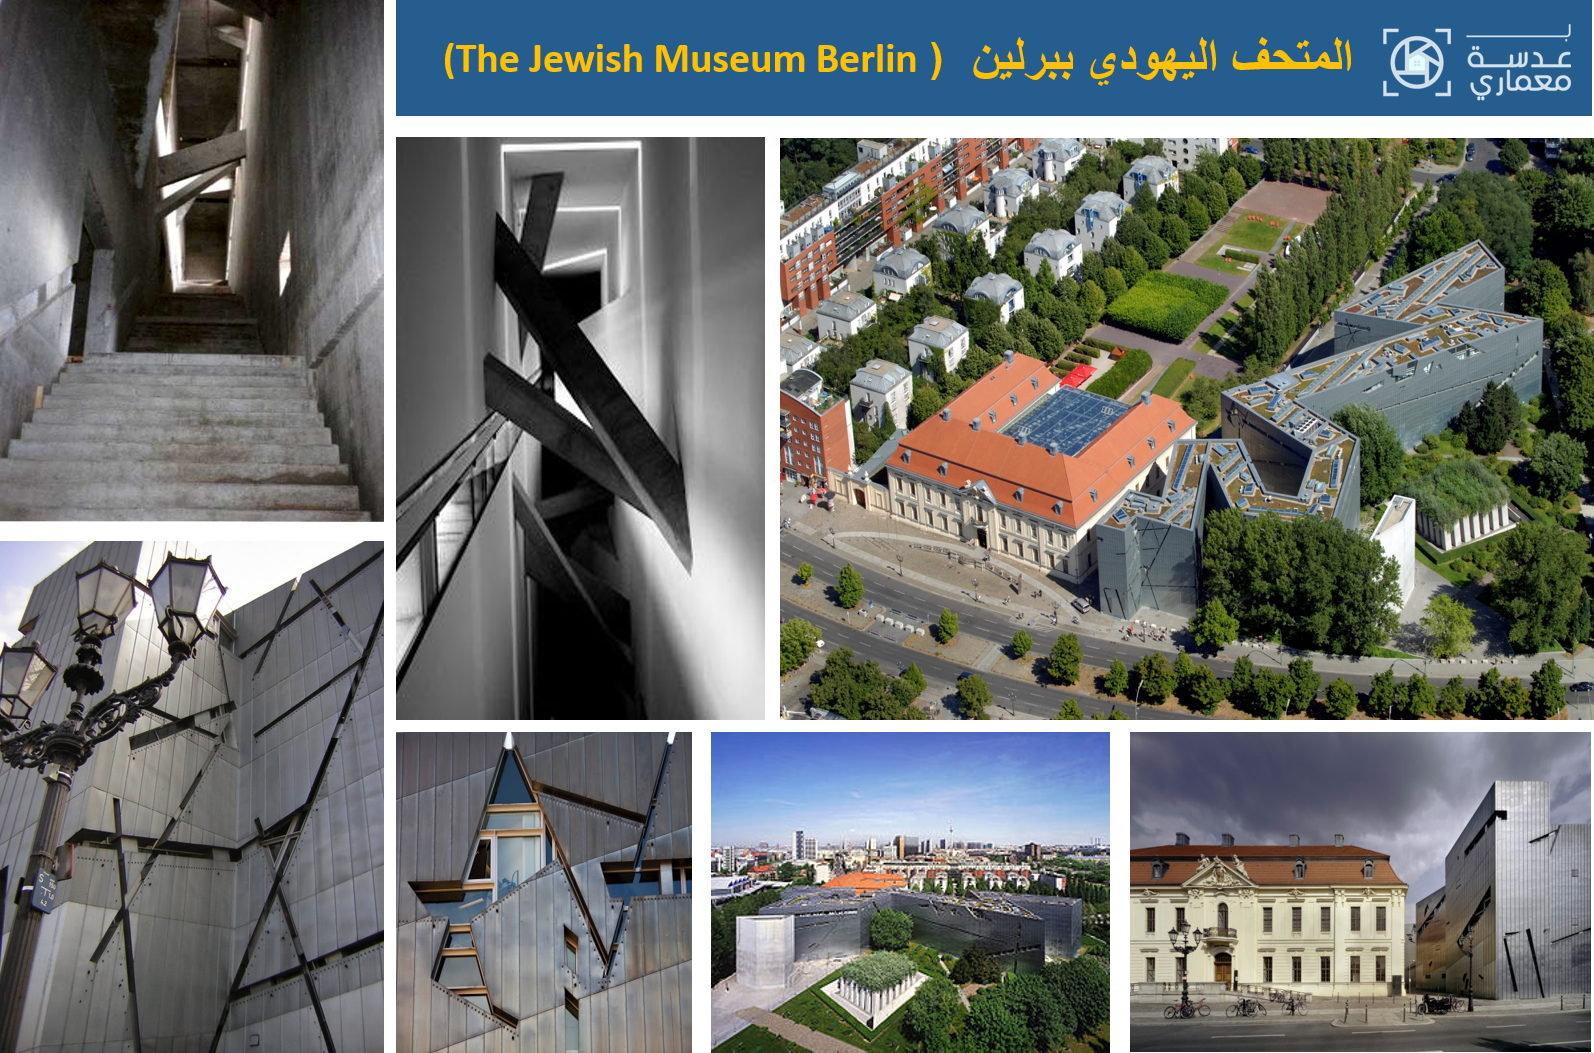 تحليل المتحف اليهودي ببرلينمعماريآ (The Jewish Museum Berlin)  بعدسة معماري 2021